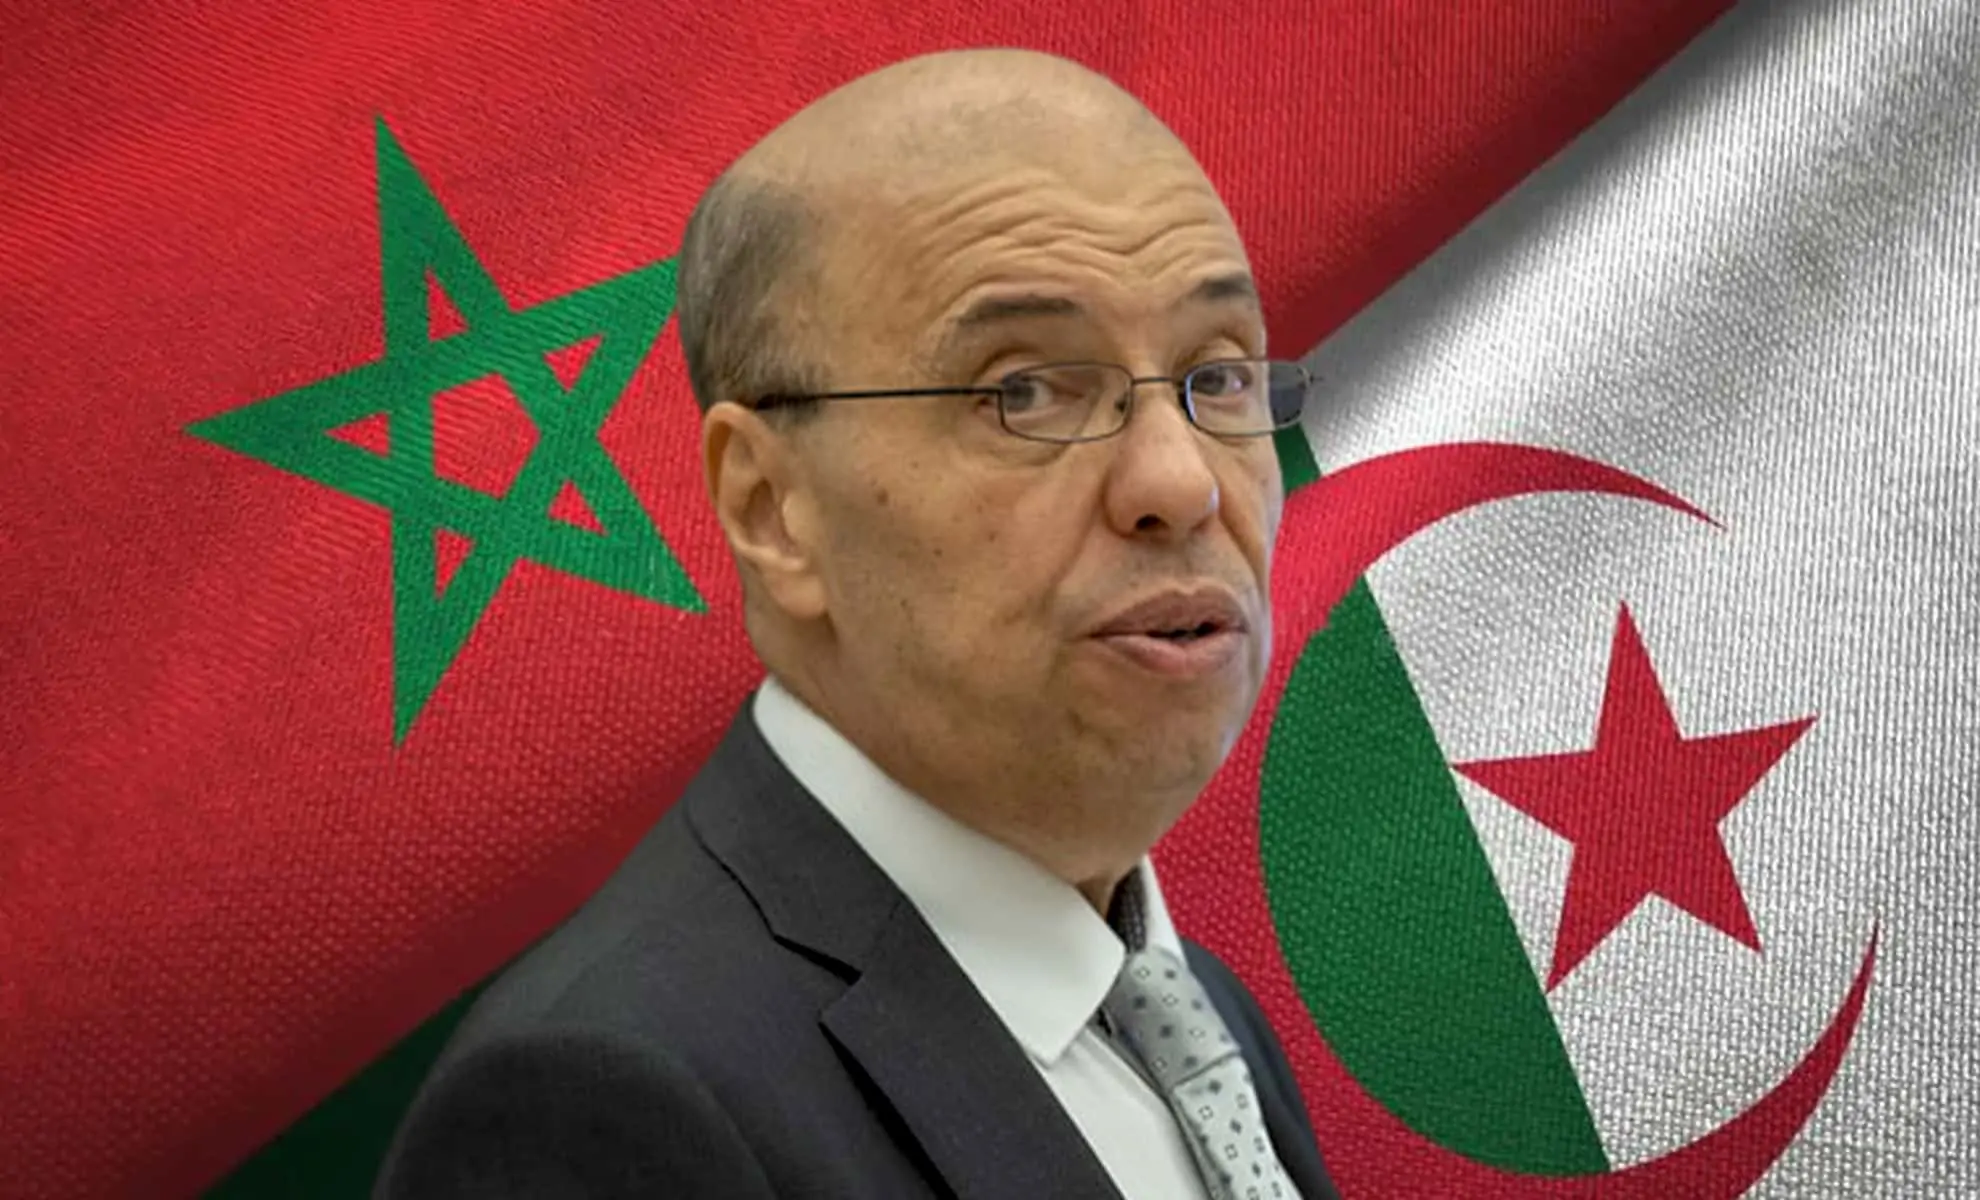 Omar Zniber sur fond des drapeaux Maroc et Algérie